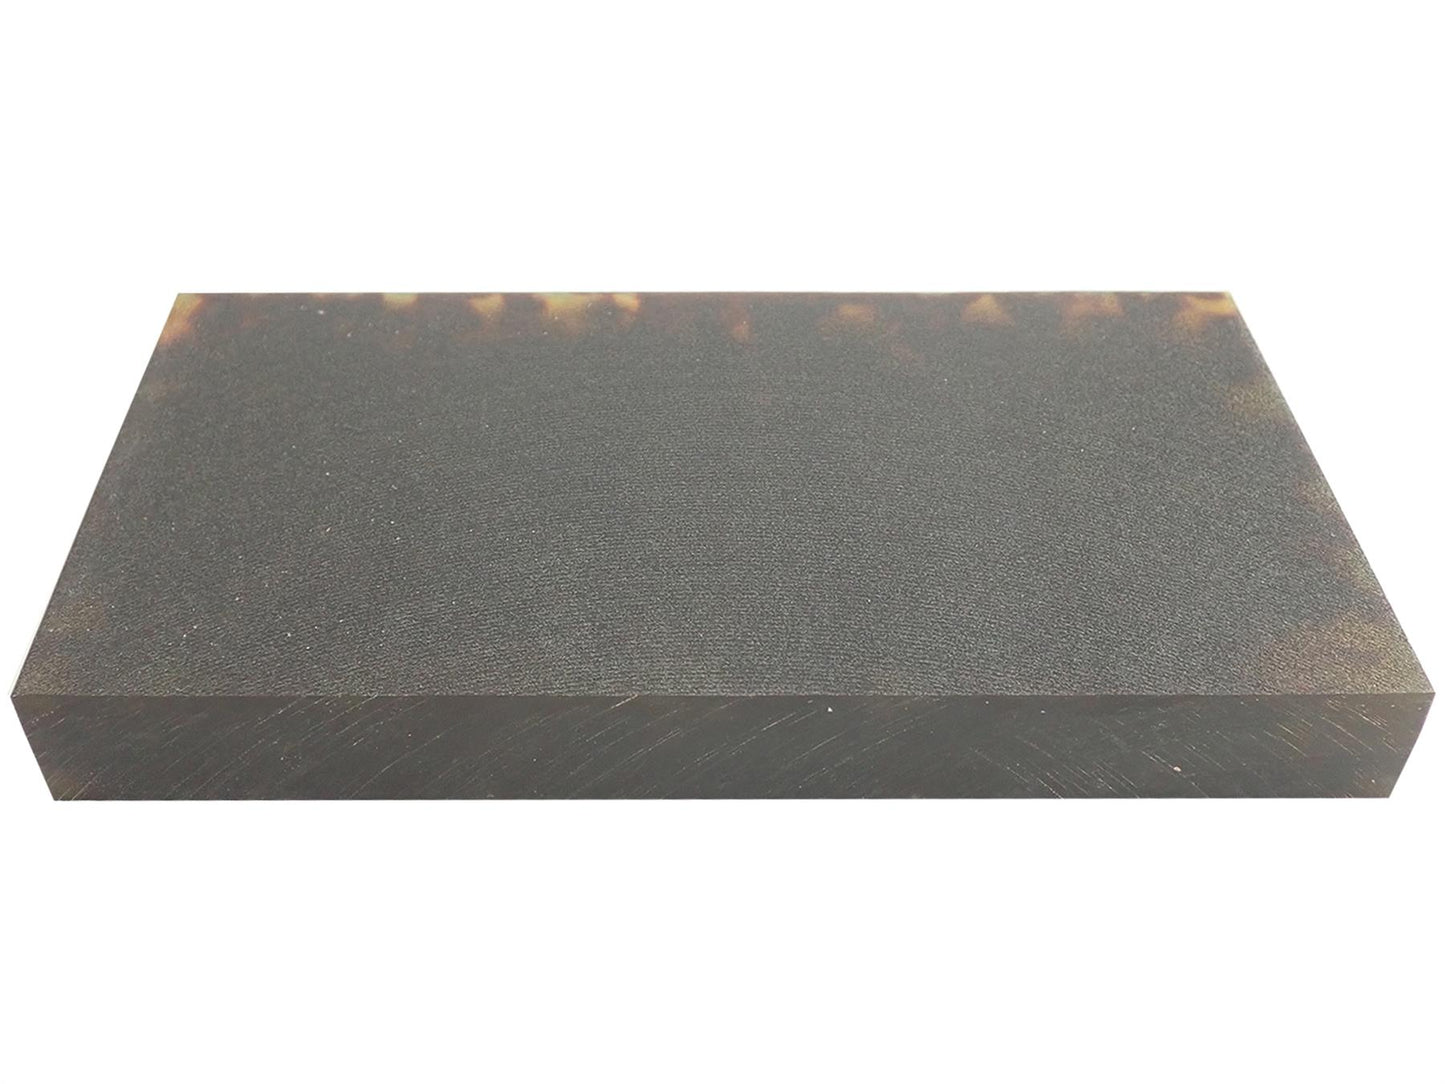 Turners' Mill N13 Tortoiseshell Cellulose Acetate Block - 160x80x20mm (6.3x3.15x0.79")